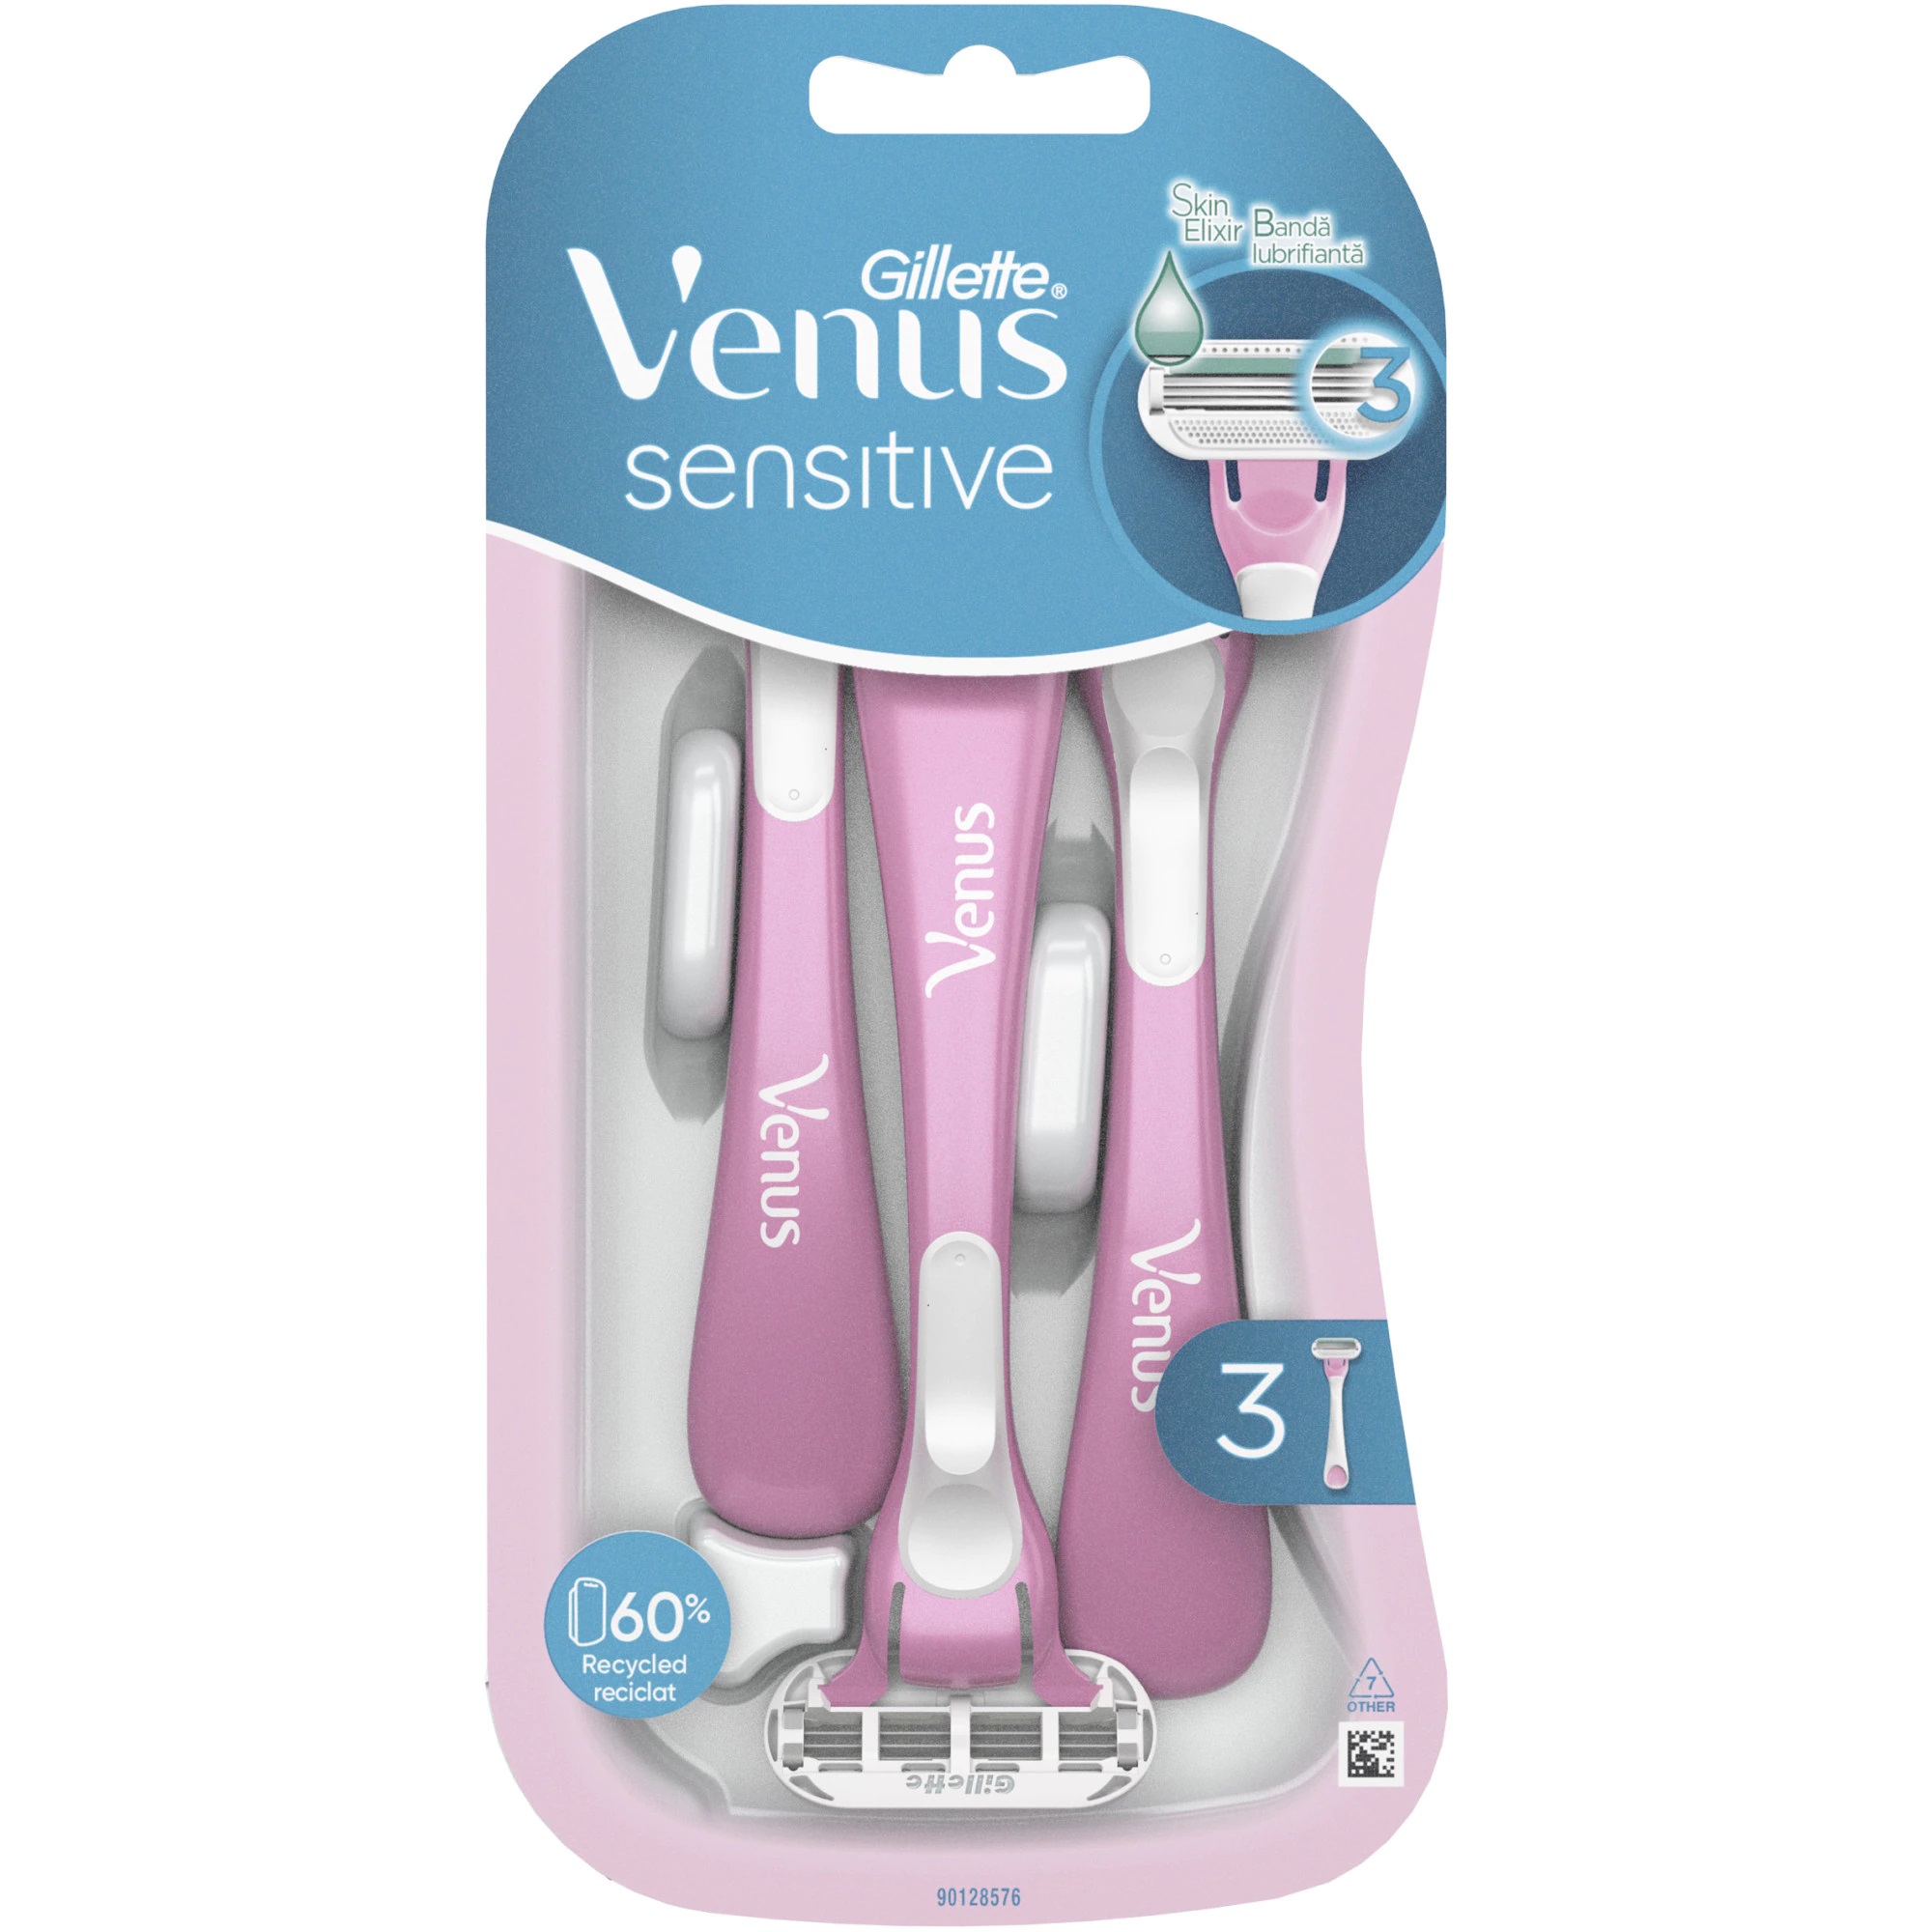 Aparate de ras de unica folosinta pentru femei Venus Sensitive, 3 bucati, Gillette